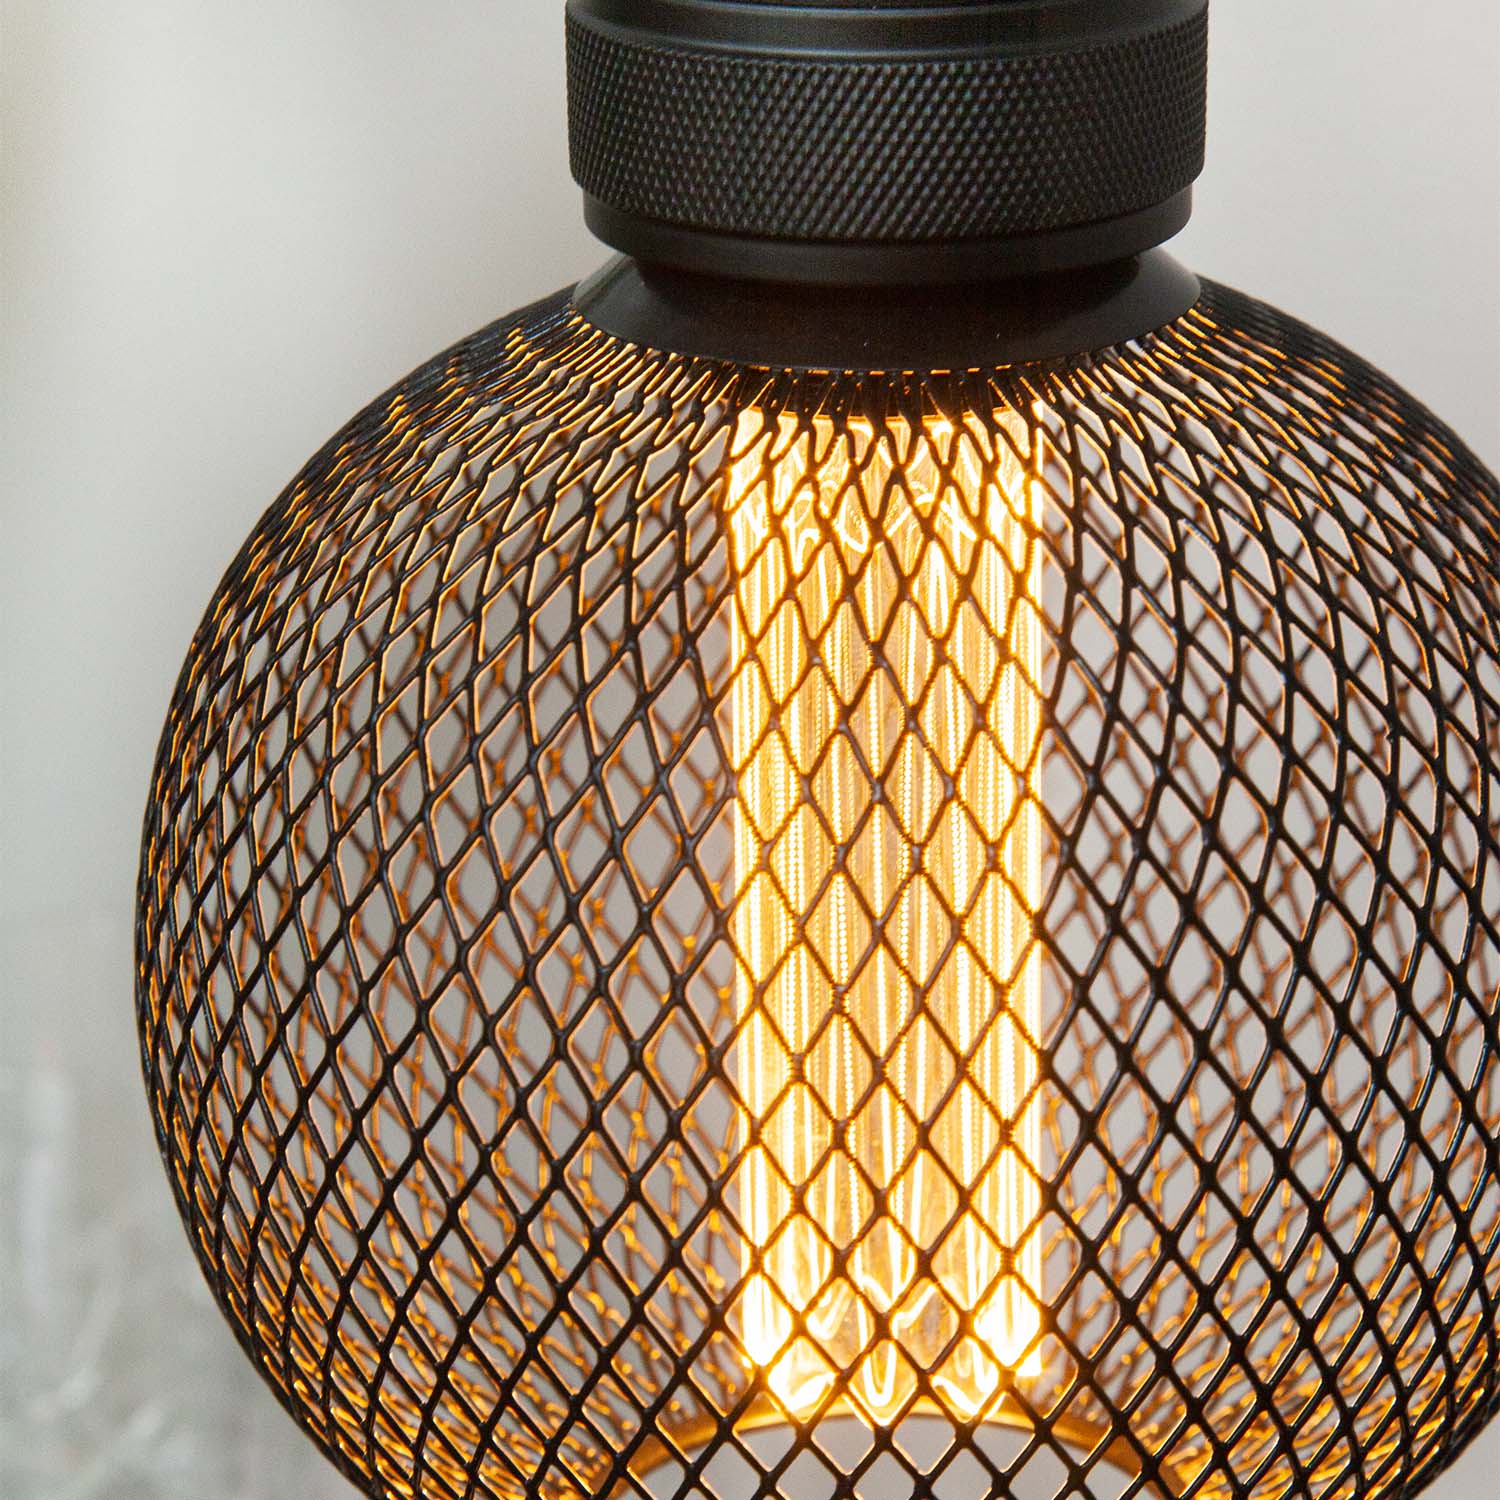 Gitter - E27 LED bulb black grid design